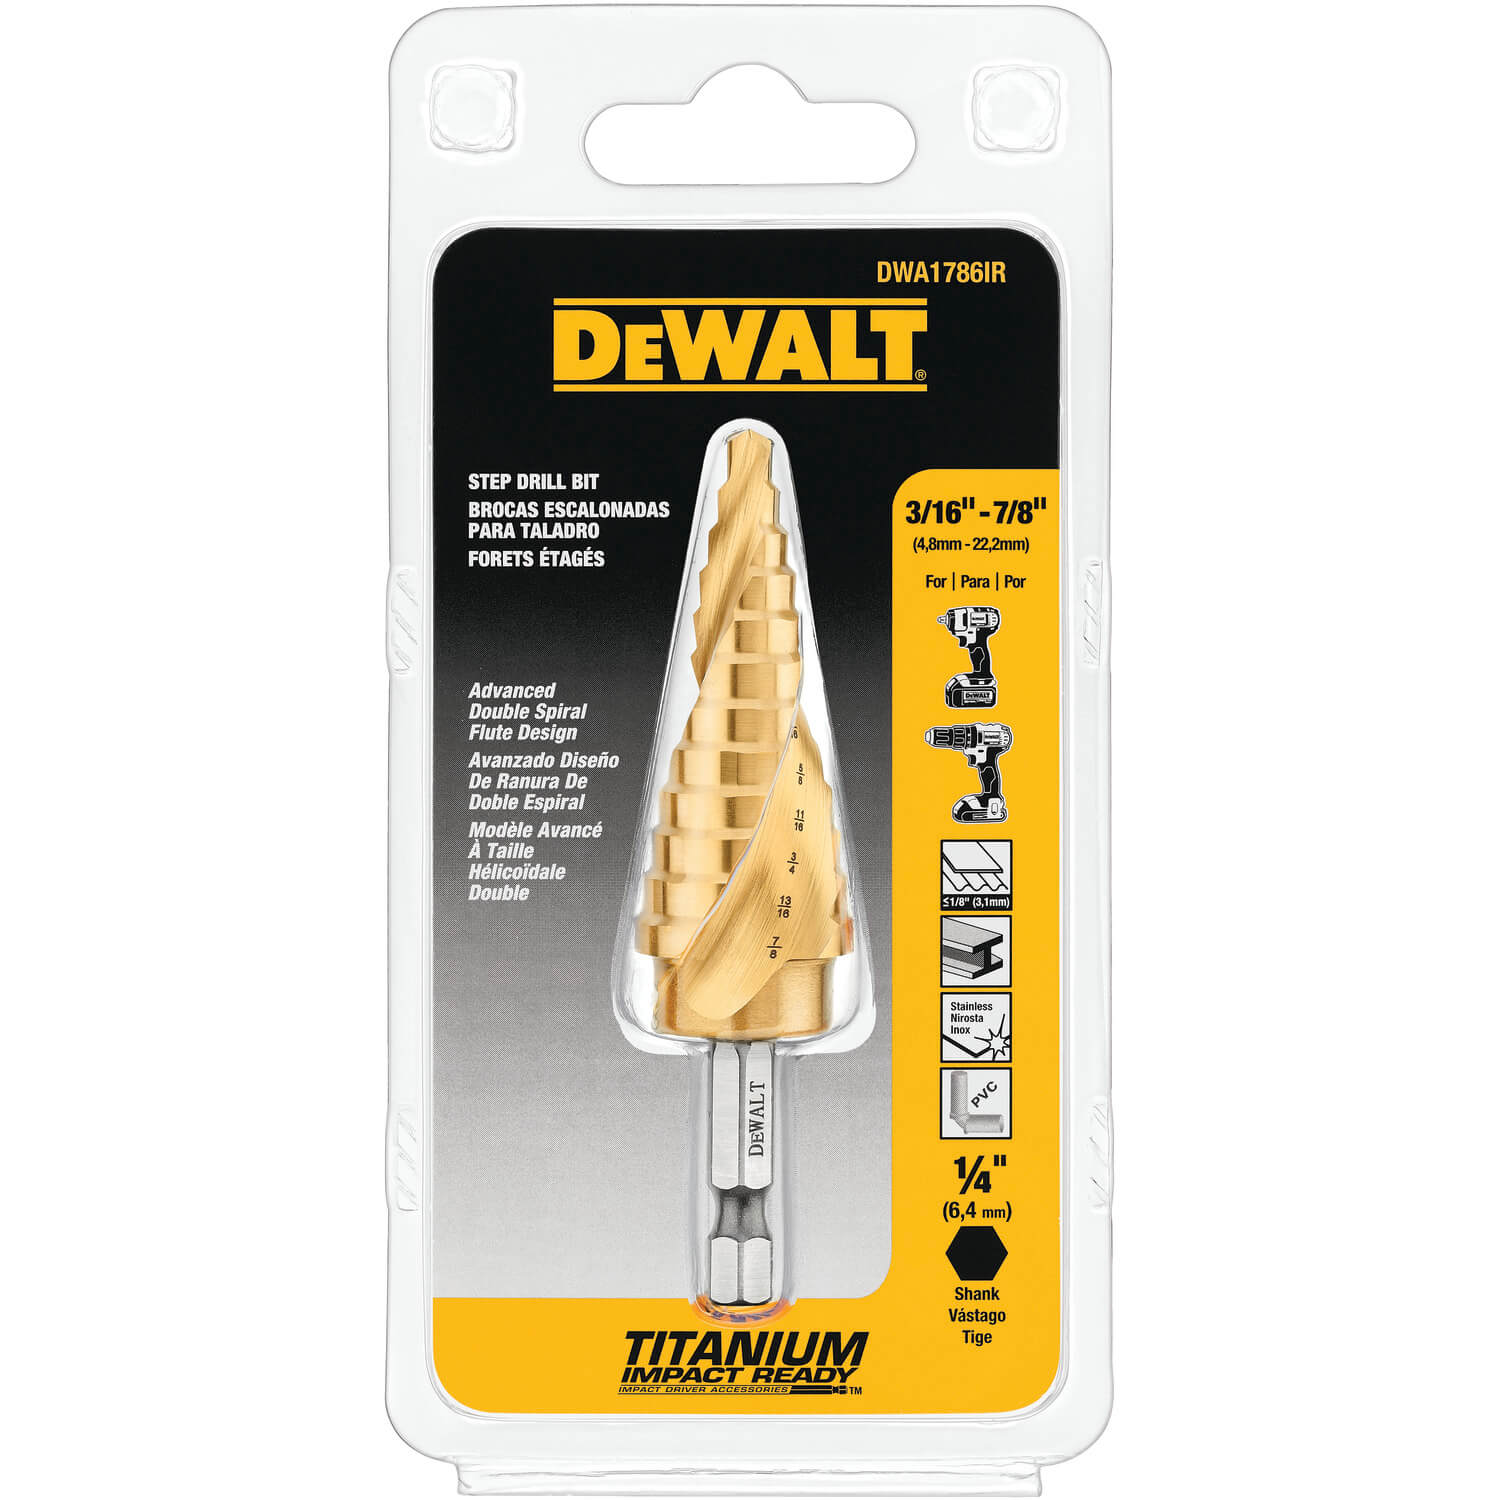 DEWALT  DWA1786IR - 3/16" - 7/8" IMPACT READY® STEP DRILL BIT - wise-line-tools